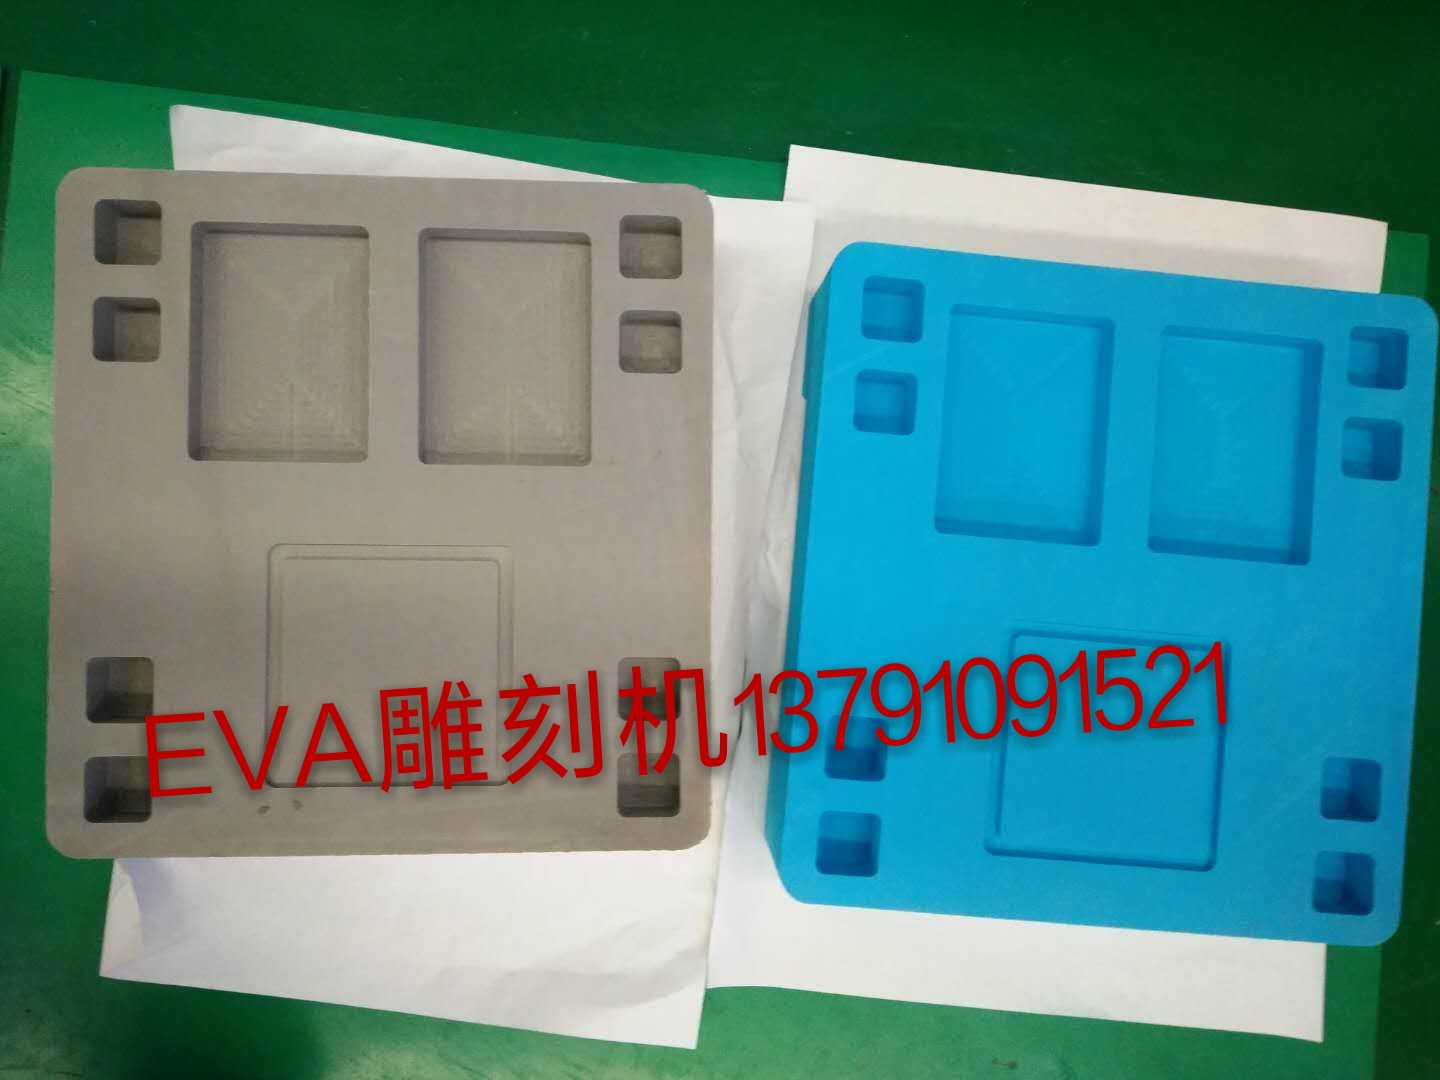 供应EVA雕刻机 欧式构件雕刻机 厂家直销 售后无忧 EVA包装材料雕刻机 EVA雕刻机 欧式构件雕刻